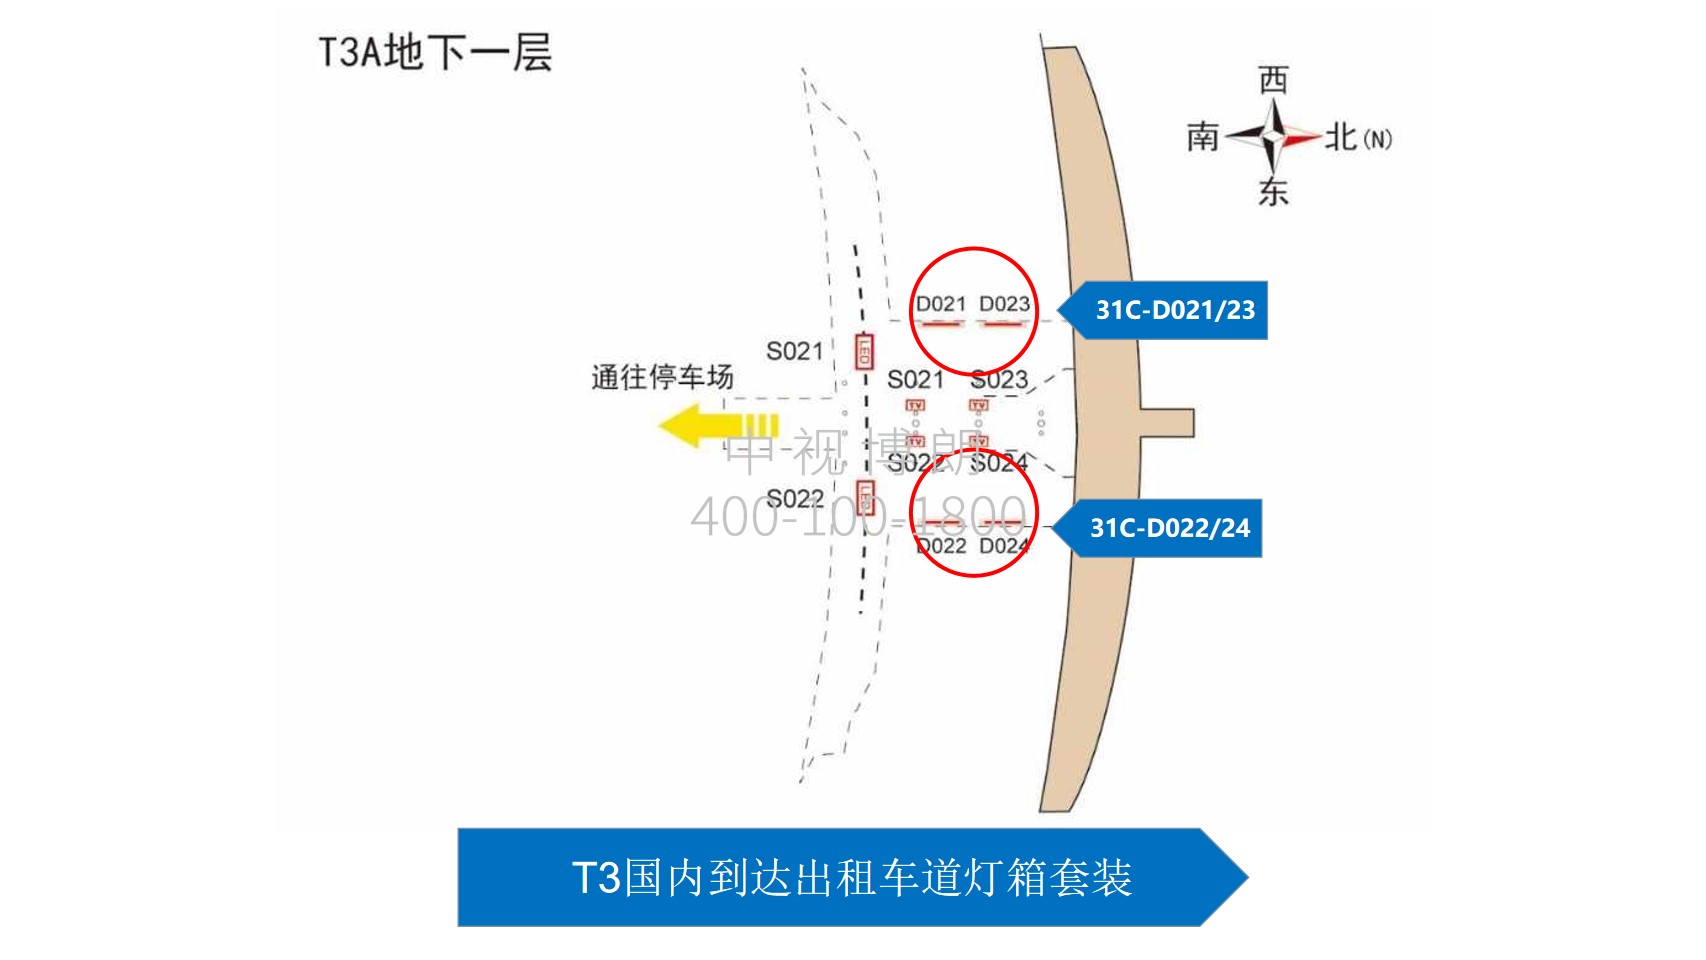 北京首都机场广告-T3到达出租车道落地灯箱套装位置图